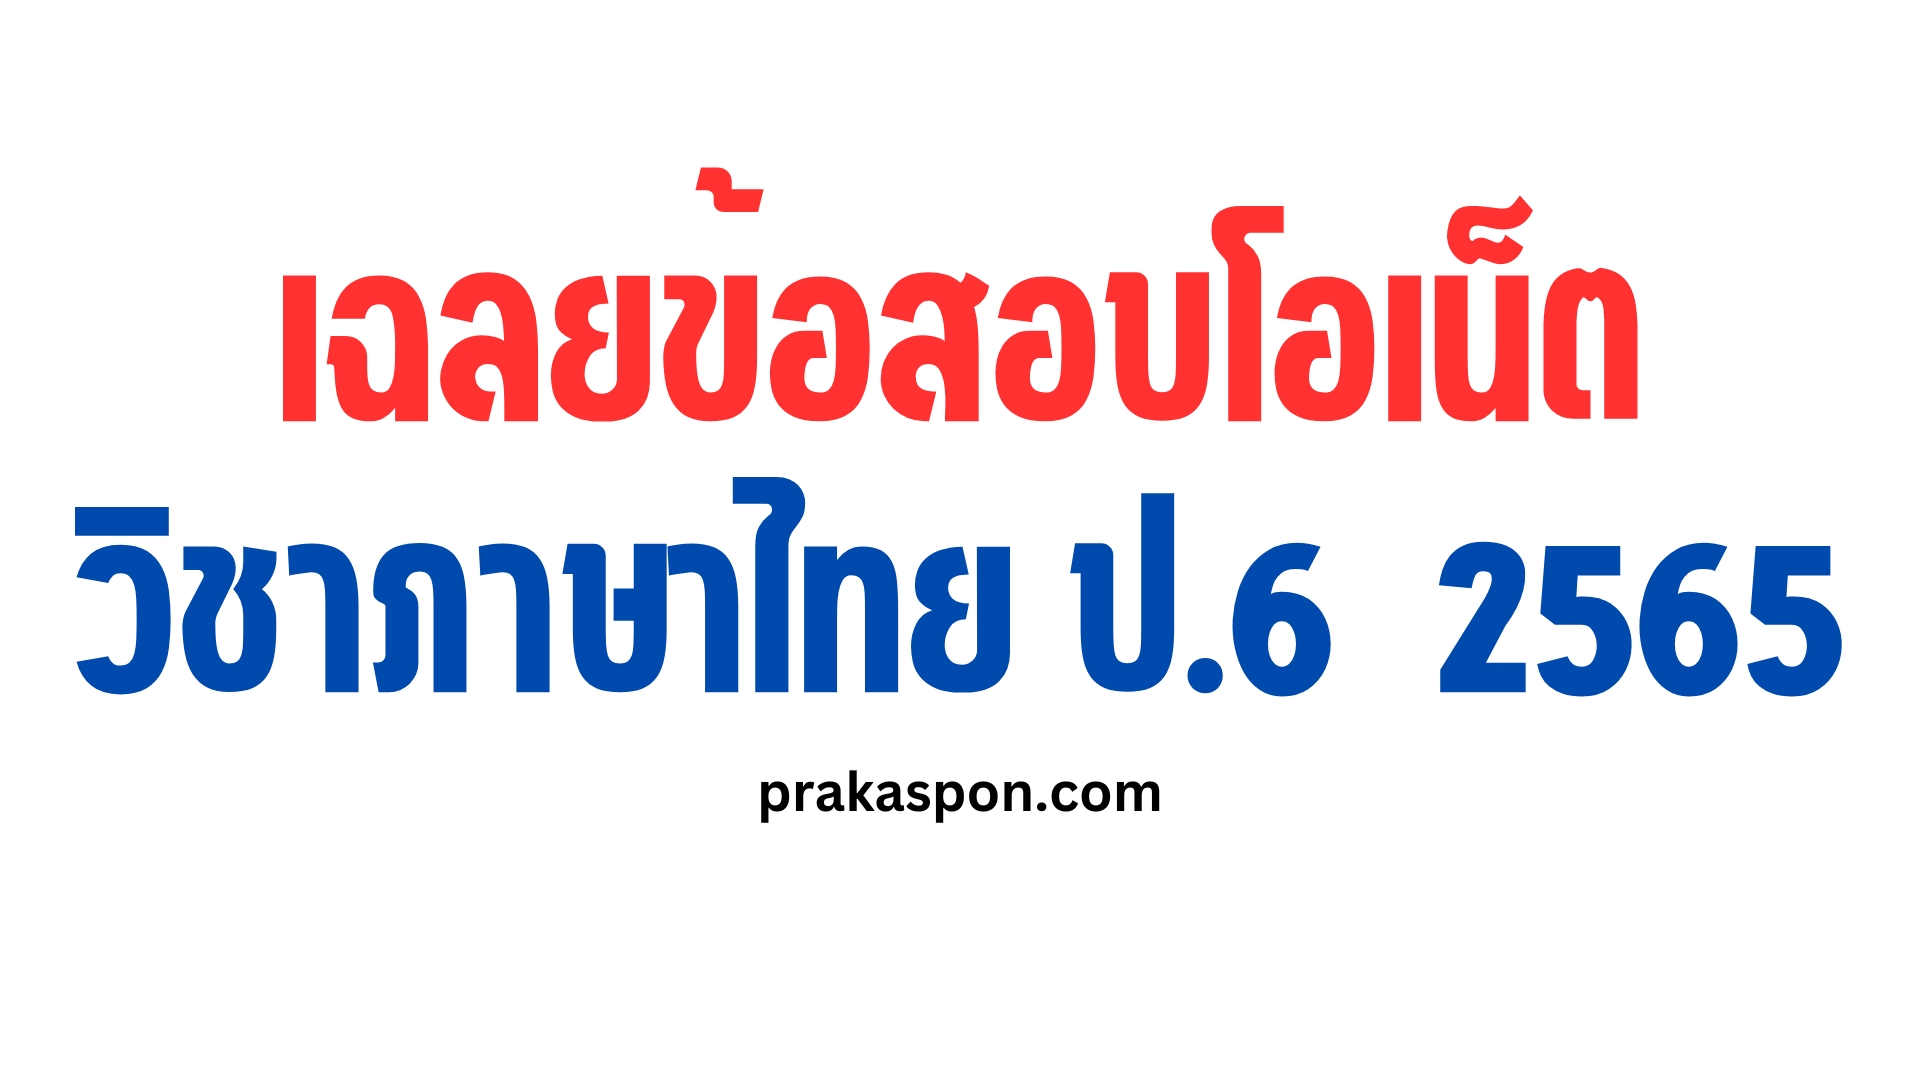 เฉลยข้อสอบโอเน็ตปี 65 ภาษาไทย ป.6 ข้อสอบโอเน็ต ปี 64 O-NET 2565 เฉลยข้อสอบโอเน็ต วิชาภาษาไทย ป.6 ปีการศึกษา 2564 สอบ 12 กุมภาพันธ์ 2565